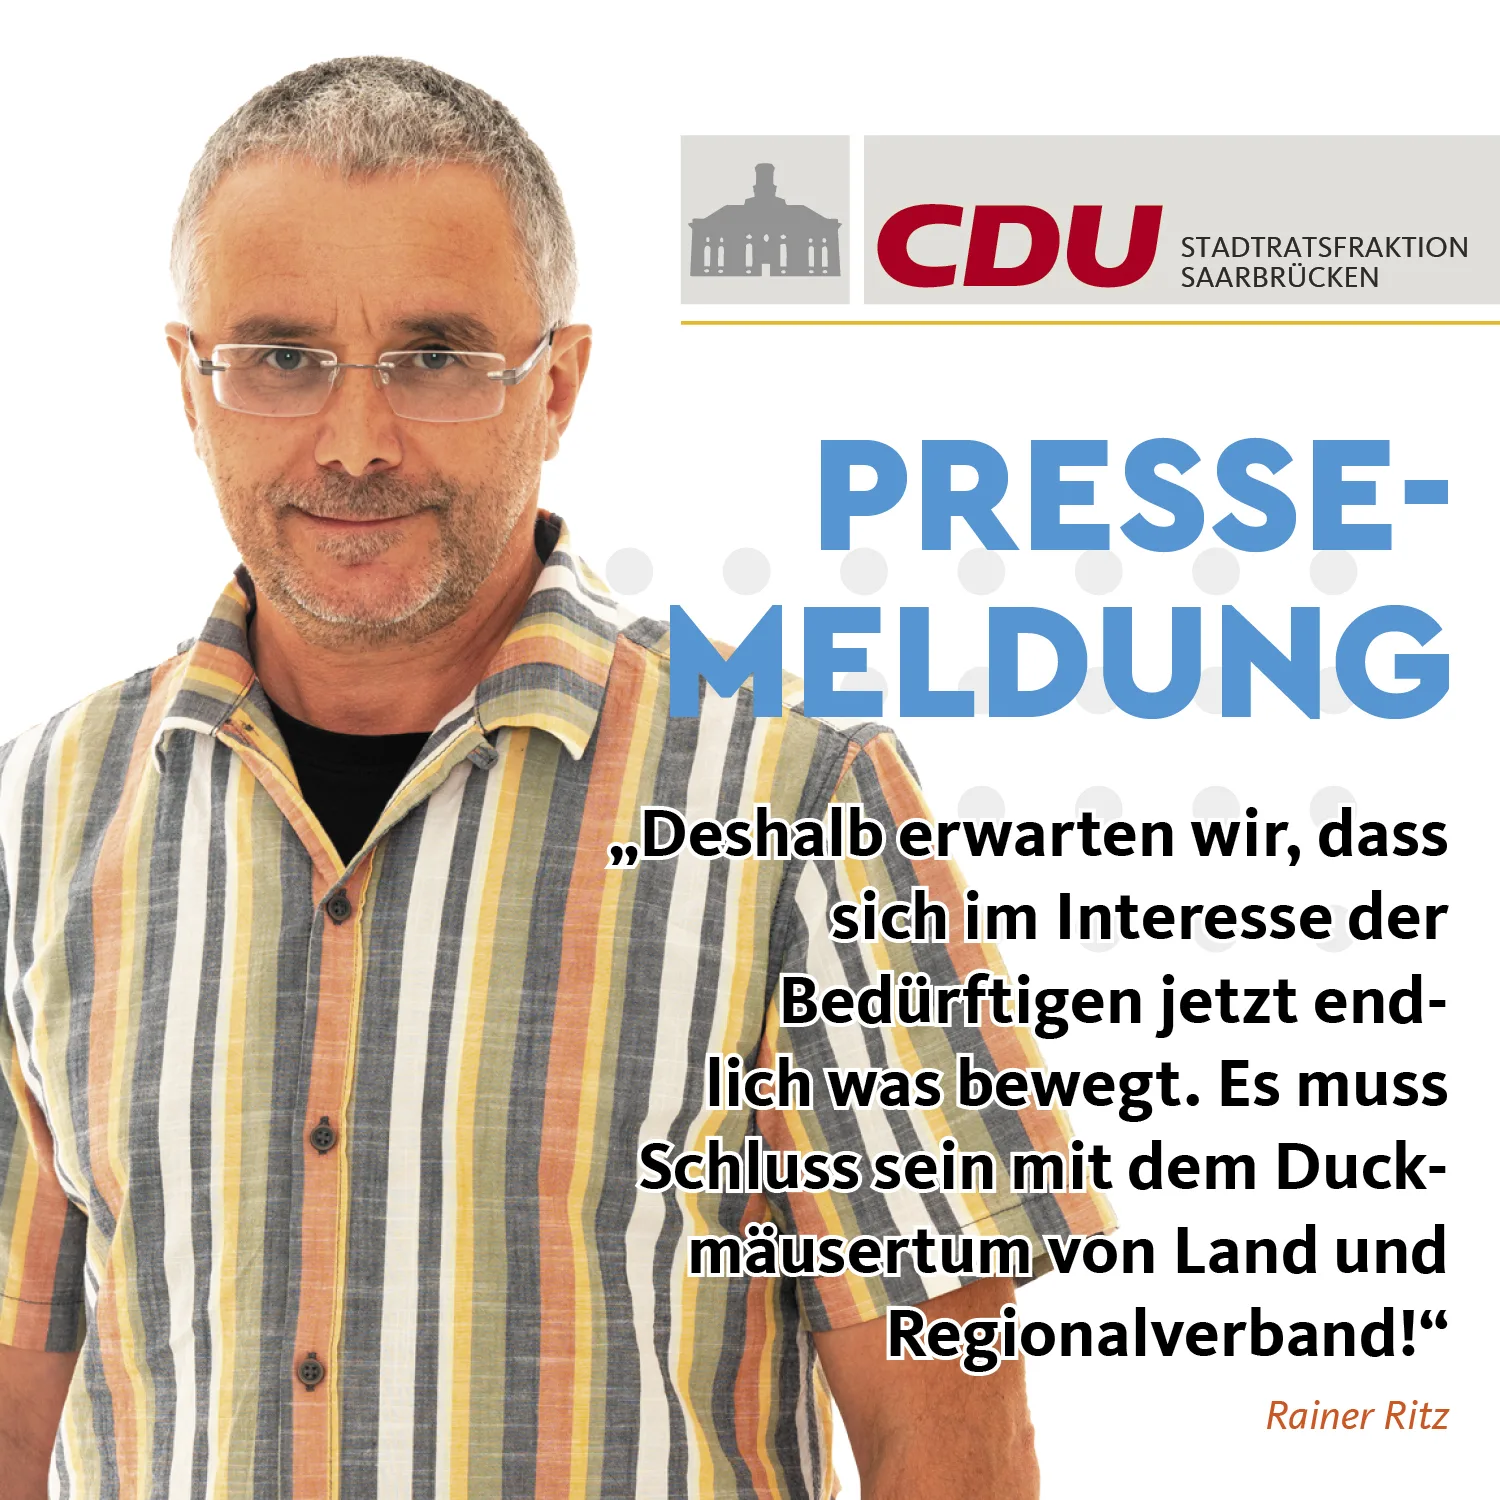 CDU_SOCIAL KACHELN_RAiner